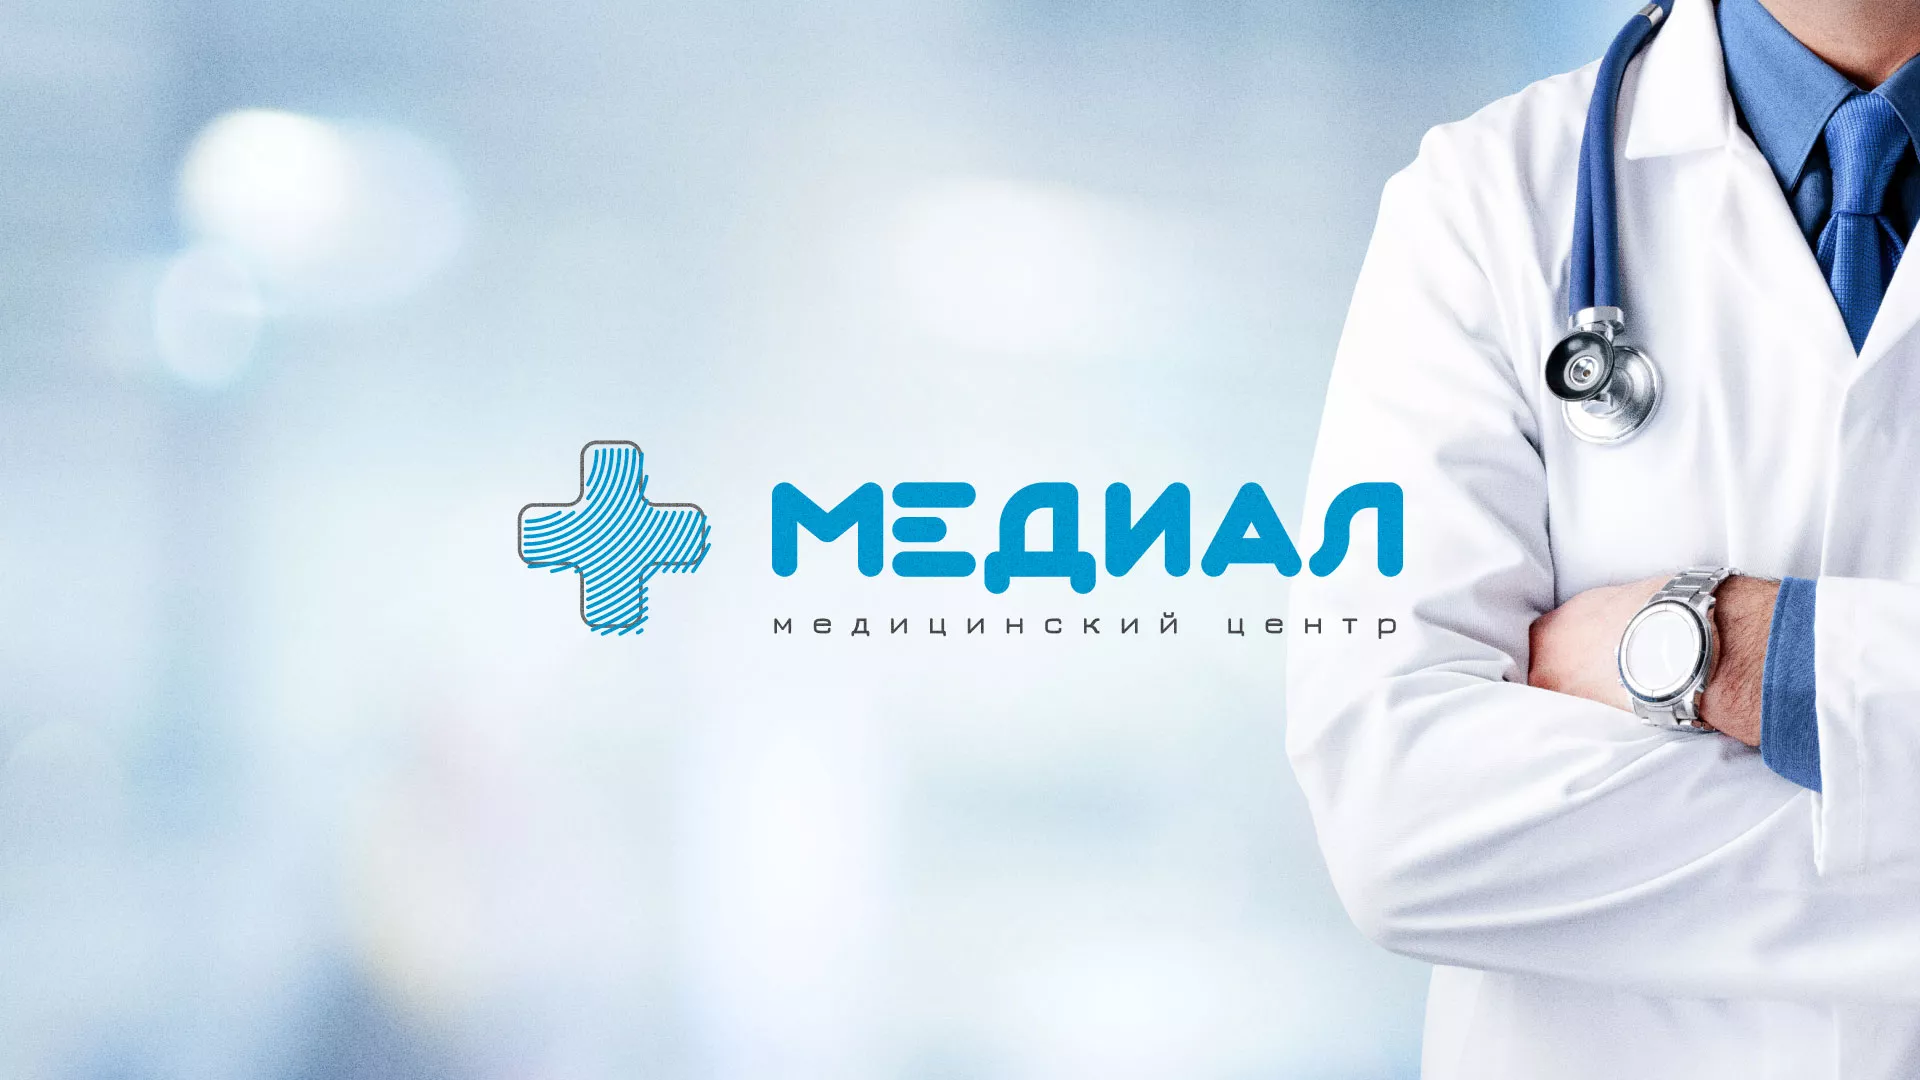 Создание сайта для медицинского центра «Медиал» в Мамадыше